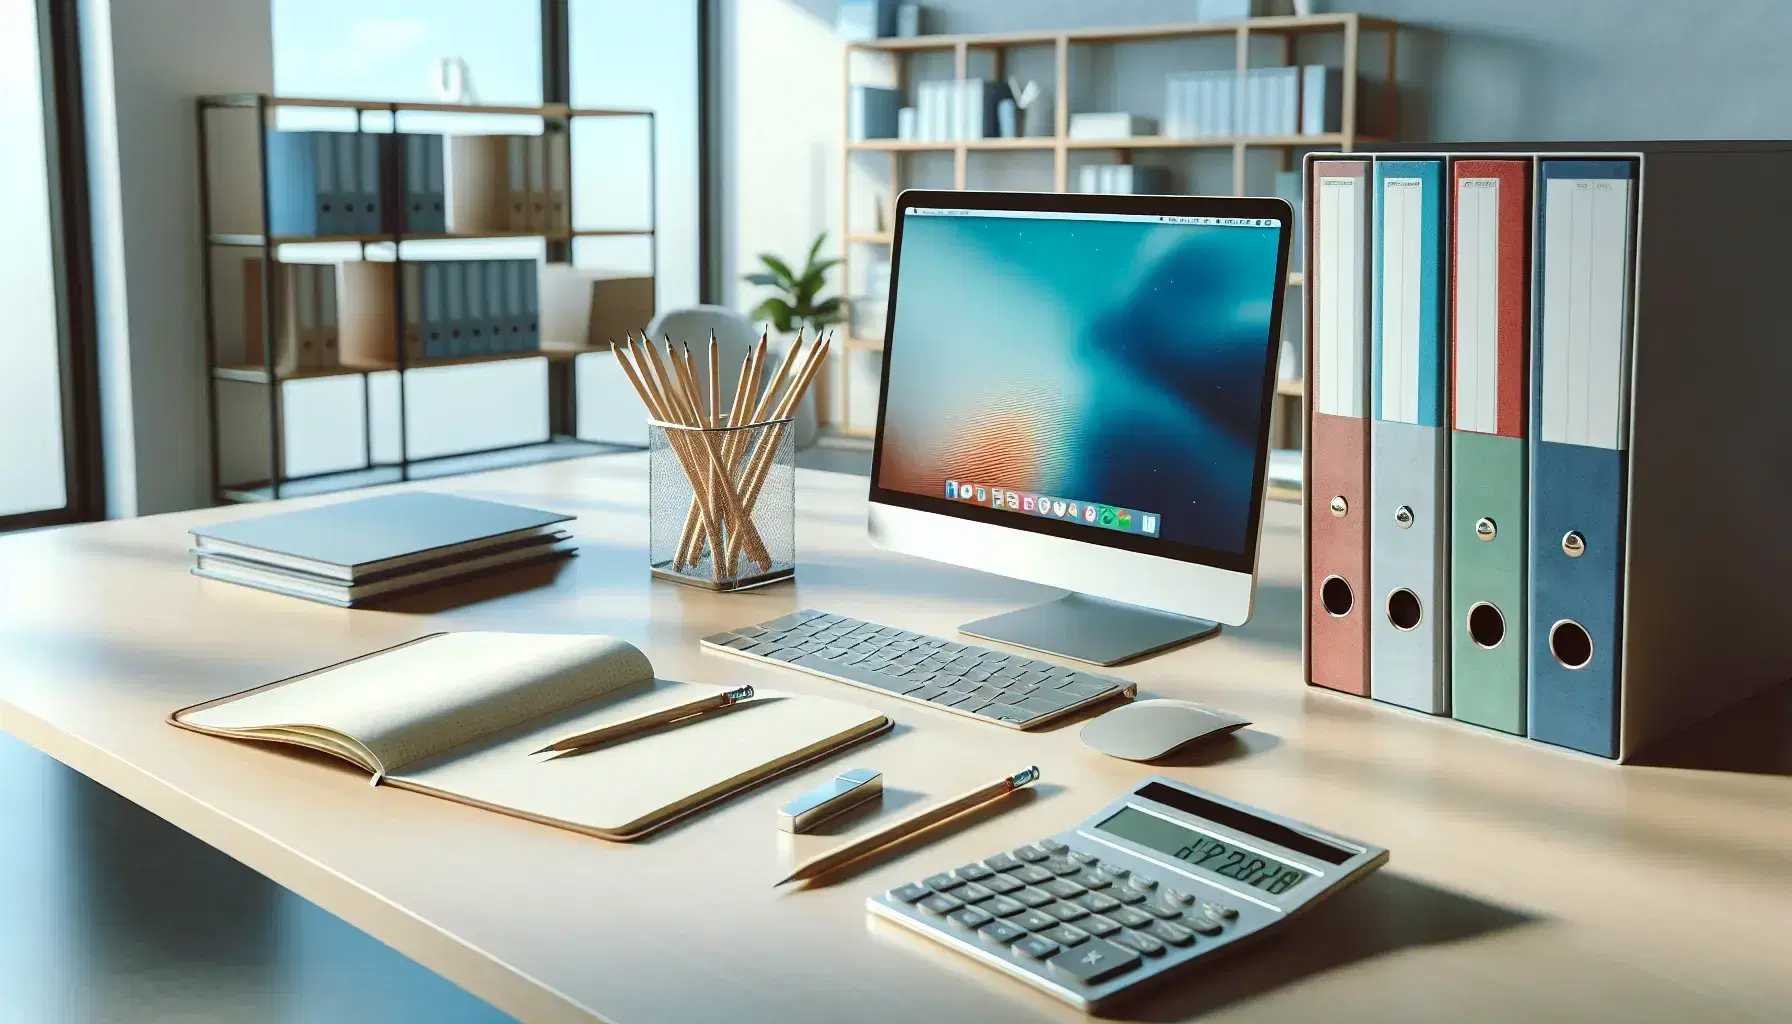 Oficina moderna con escritorio claro, calculadora, lápices, cuaderno y carpetas de colores junto a laptop con fondo azul, reflejo de luz natural.